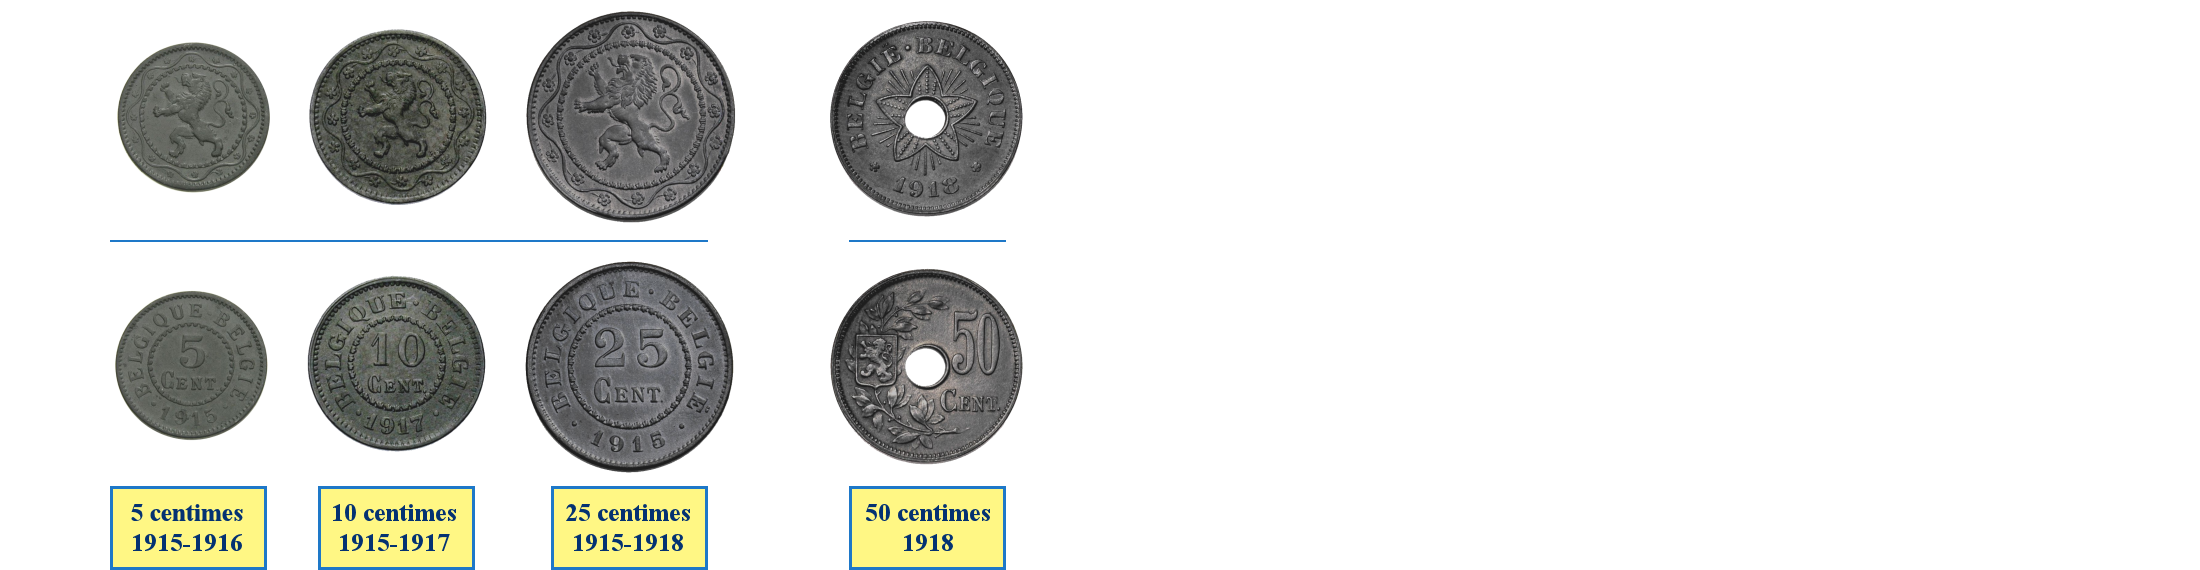 Photos de pièces de monnaies de Belgique sous l'occupation allemande de la première guerre mondiale